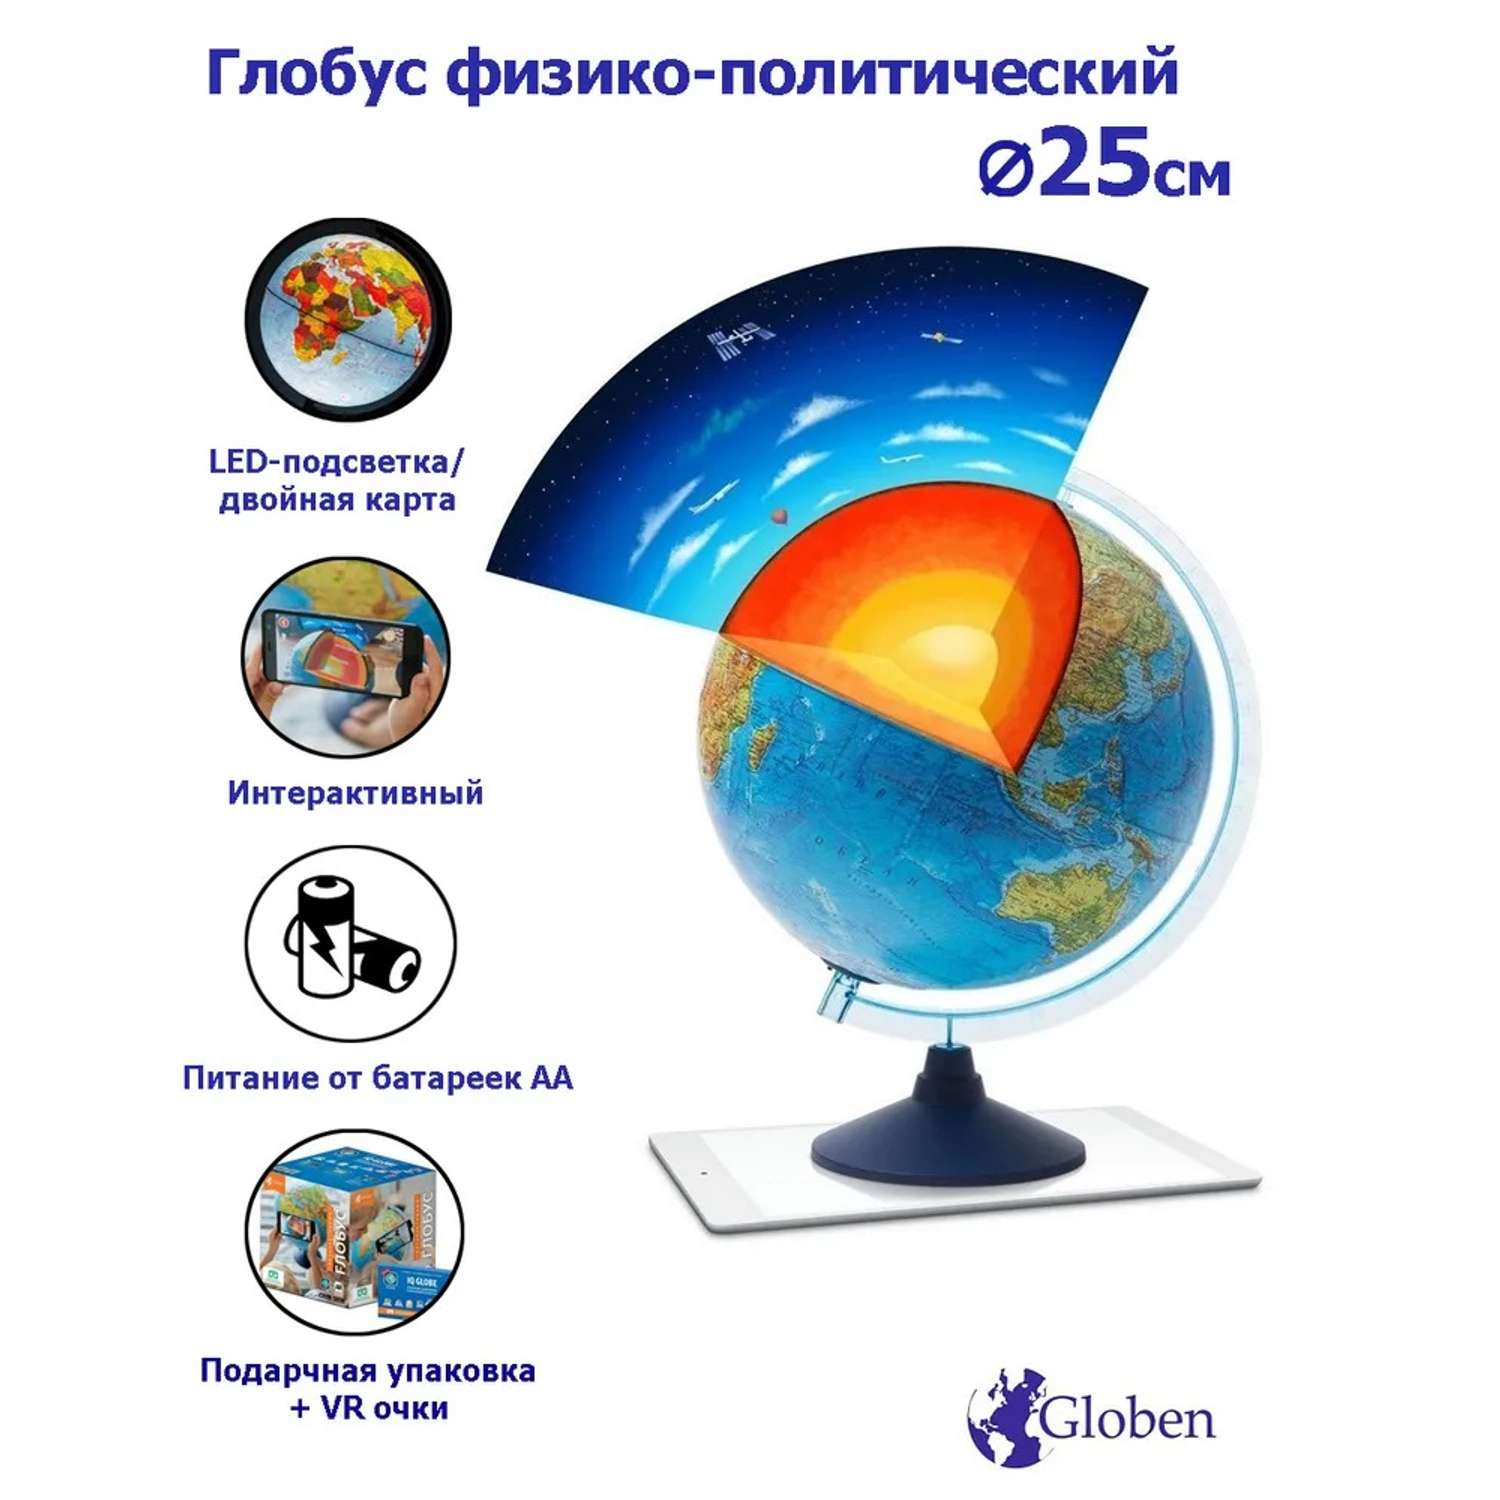 Интерактивный глобус Globen Земли физико-политический с подсветкой от батареек 25см VR очки - фото 1